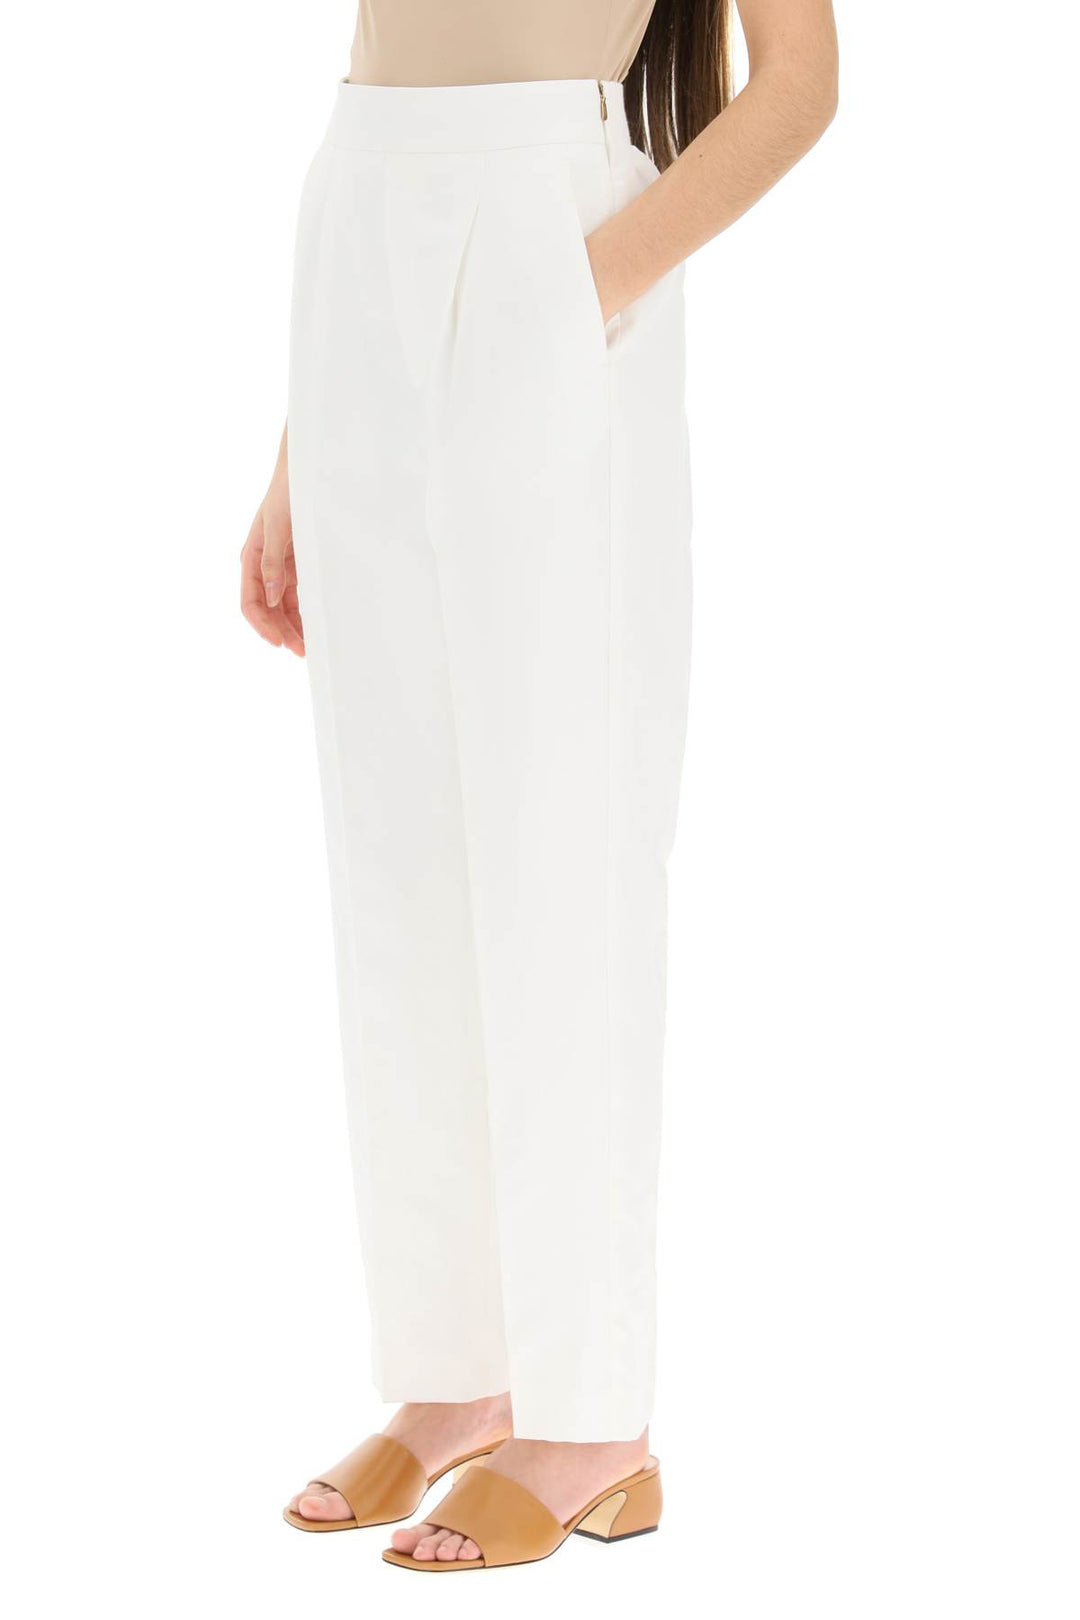 Agnona Linen Trousers   Bianco